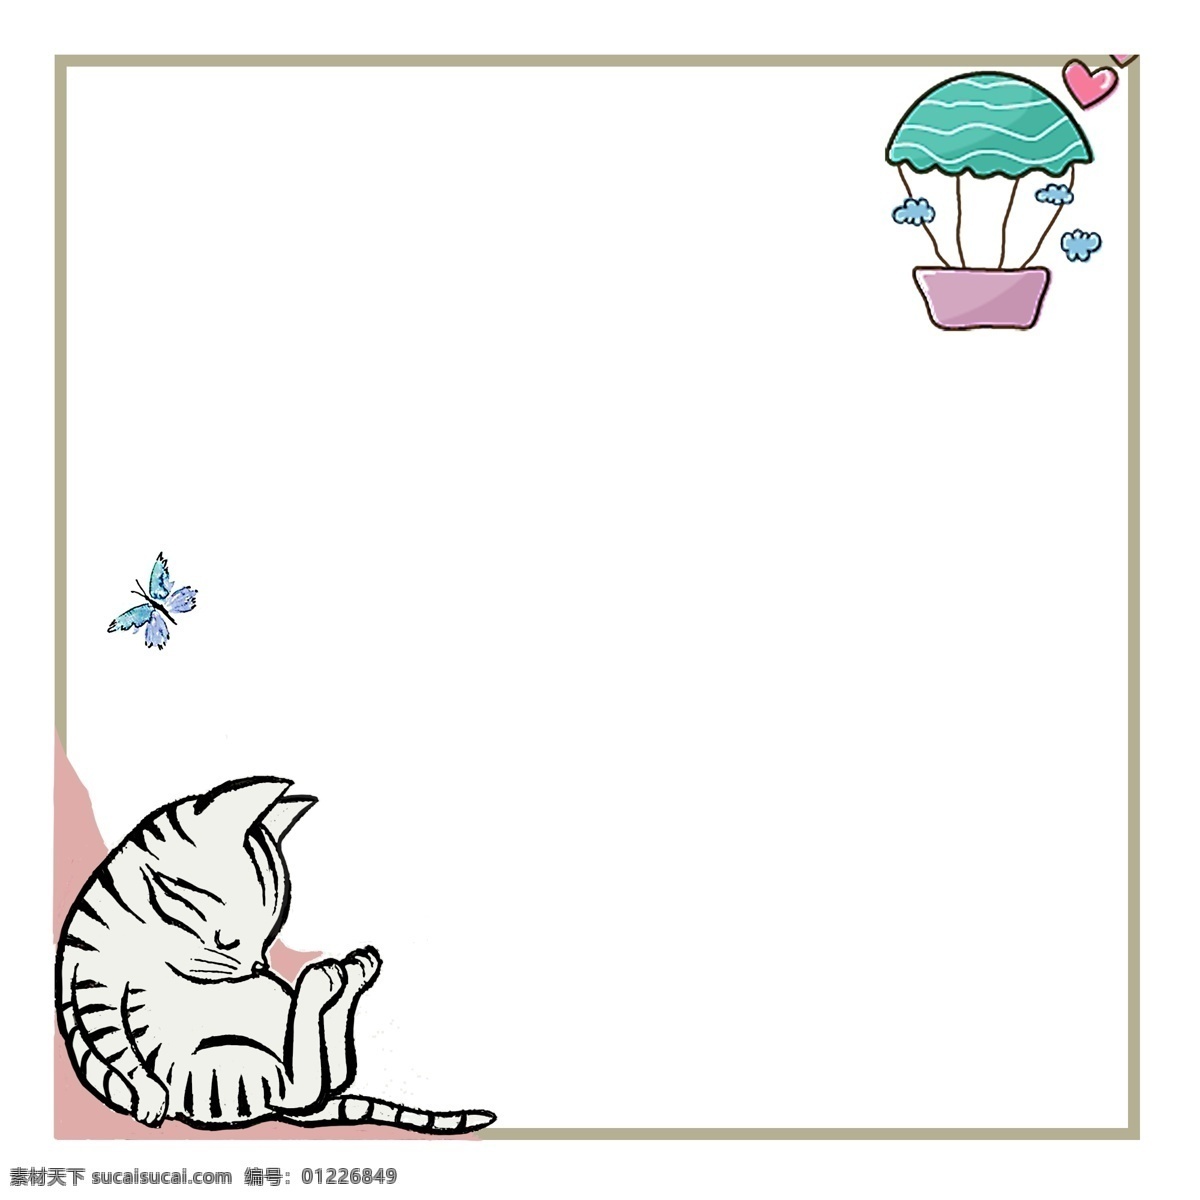 小 动物 装饰 边框 插画 白色的小猫 蓝色的蝴蝶 绿色的热气球 粉色心形 正方形边框 马卡龙装饰 小猫装饰